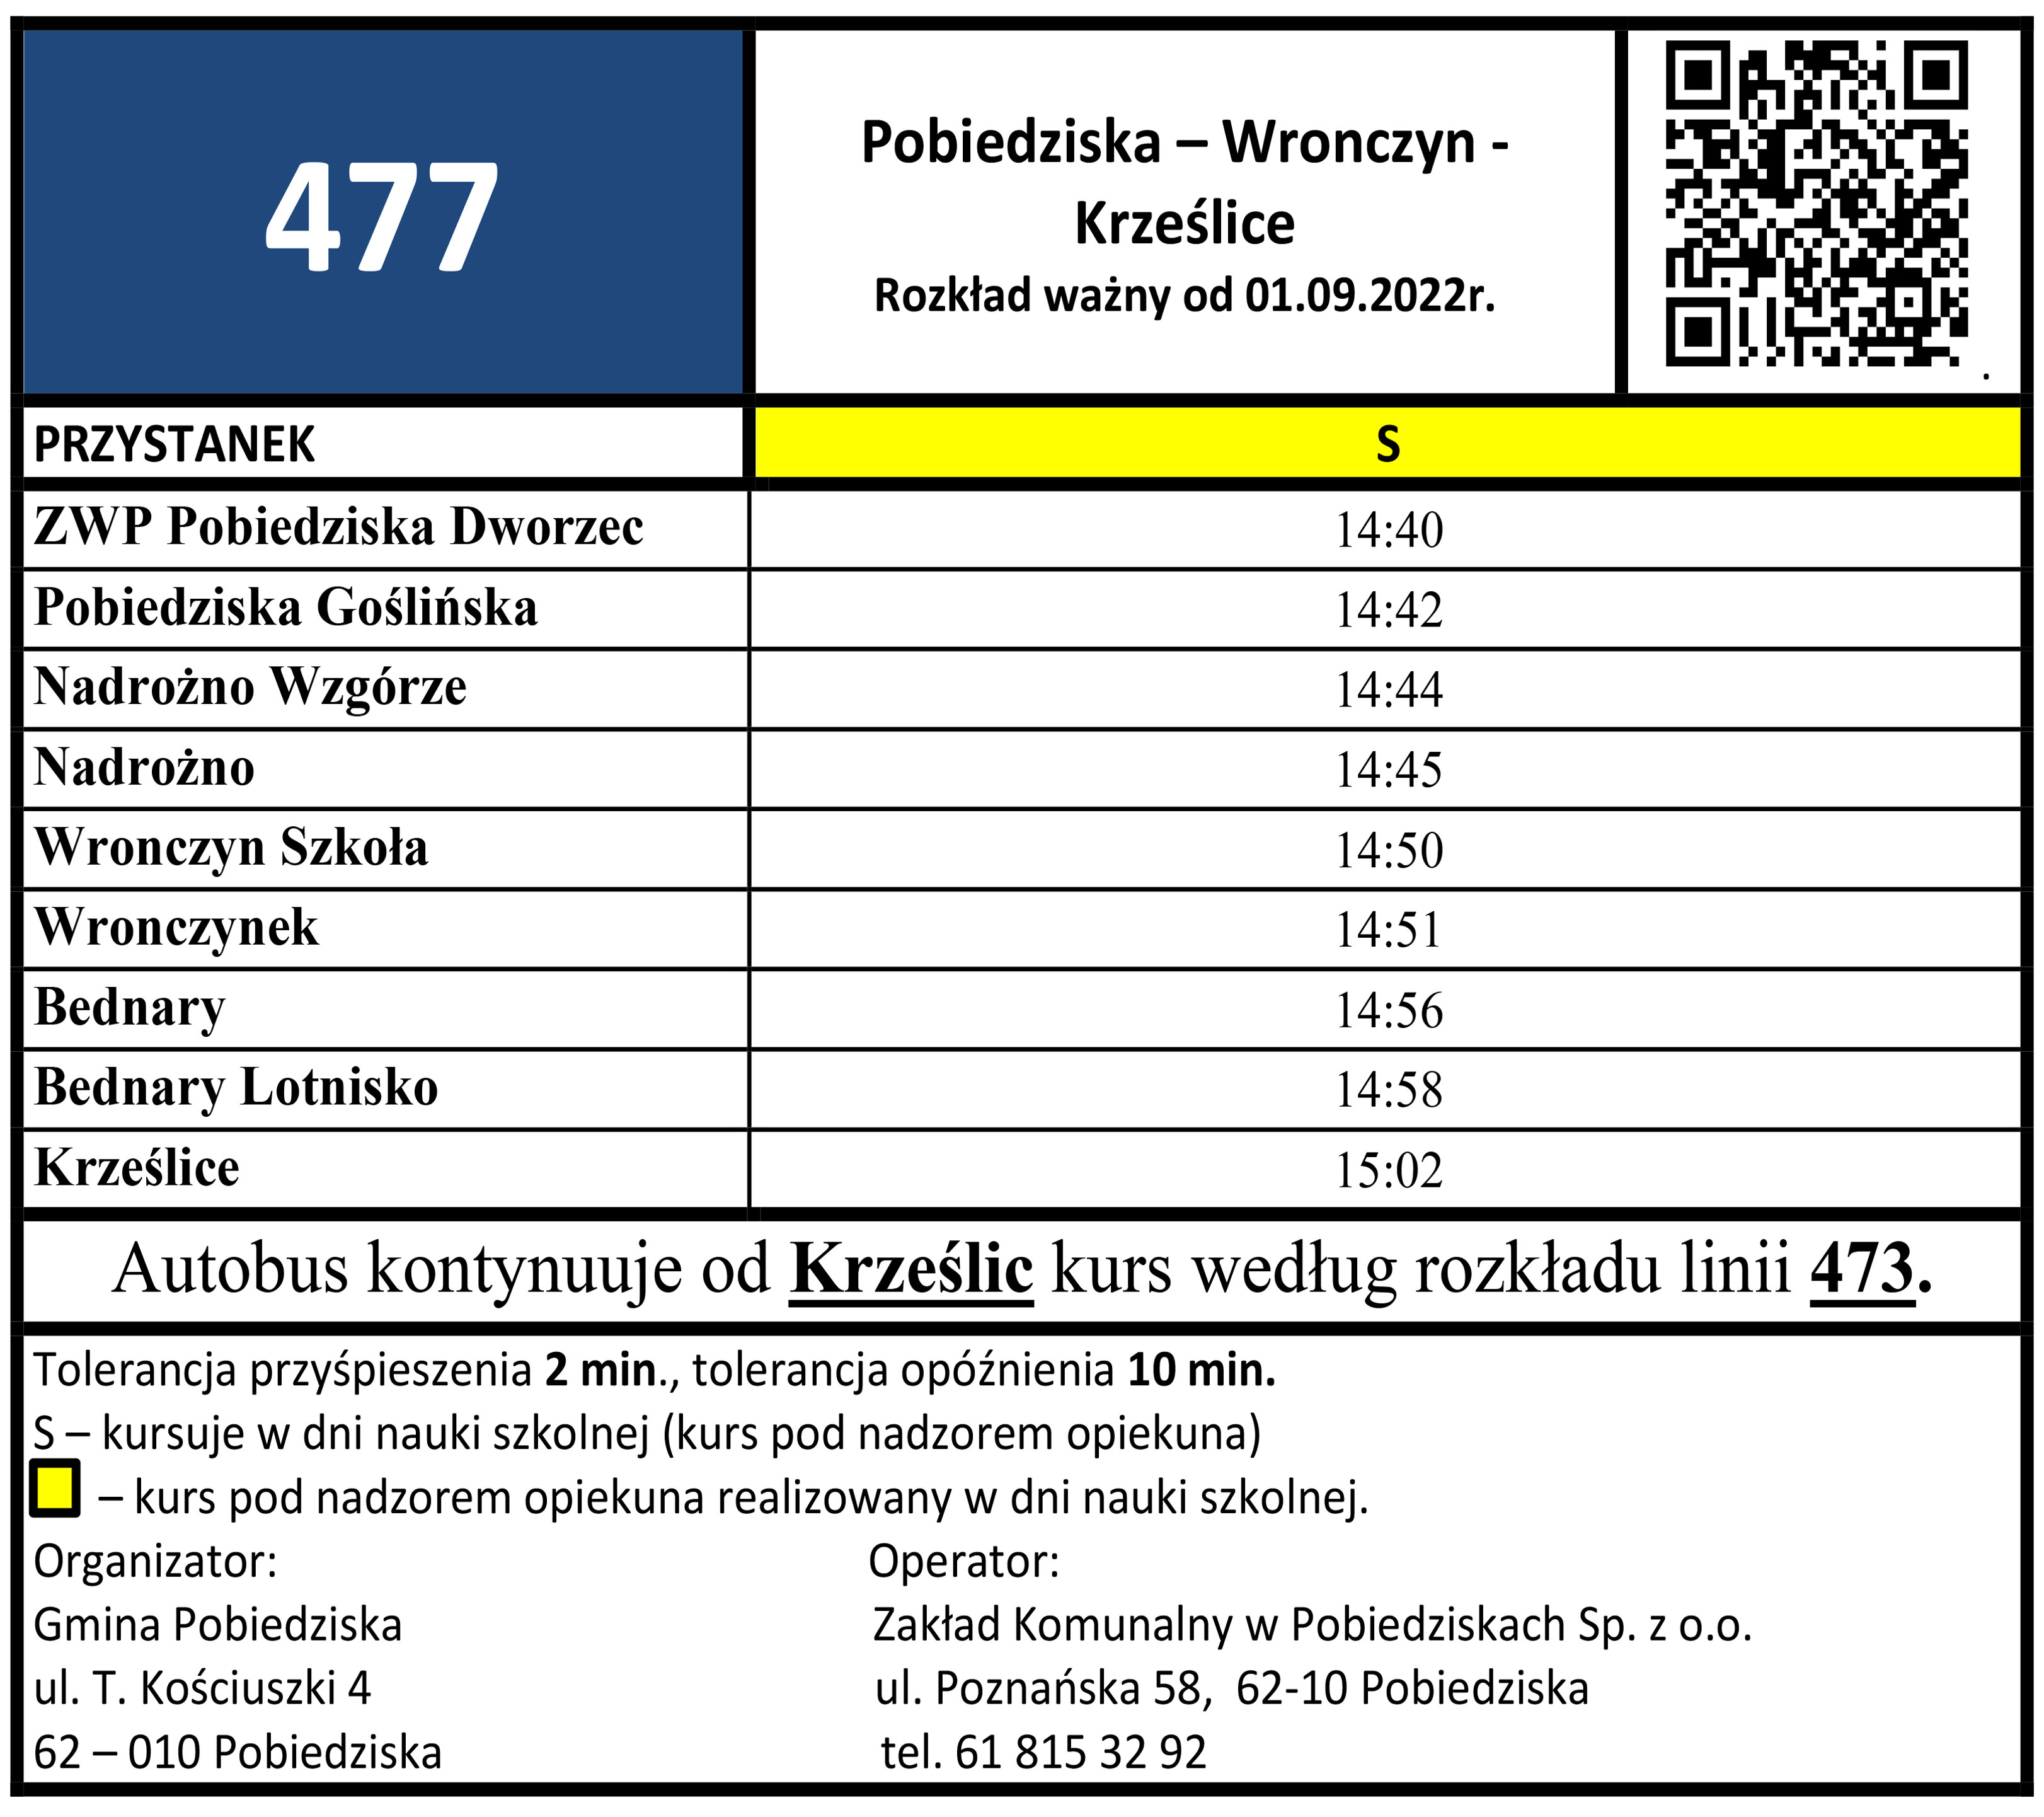 477 Pobiedziska - Wronczyn - Krześlice od 01.09.2022